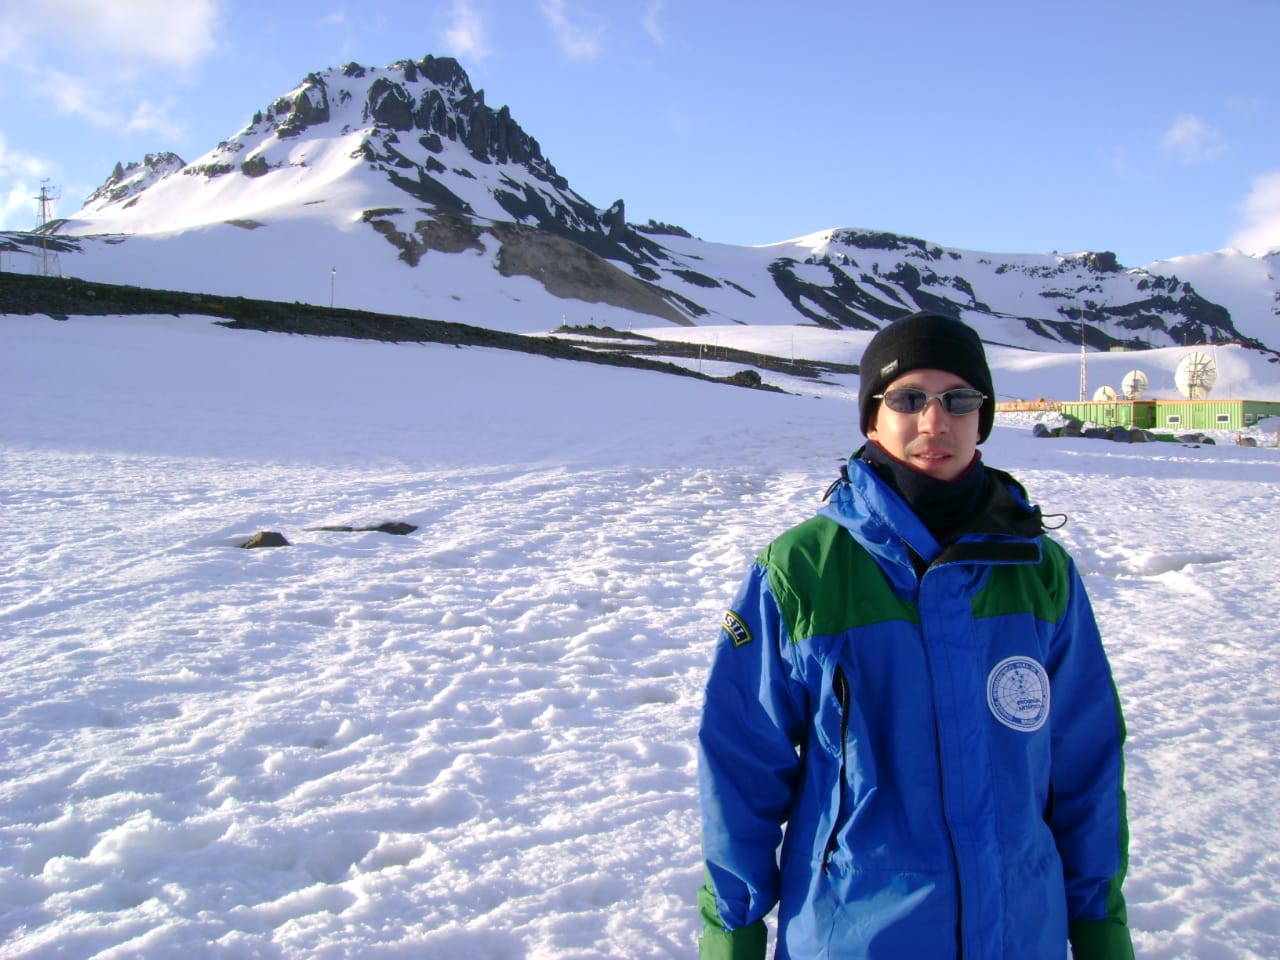  ﻿Equipe de pesquisadores brasileiros coordenada por professor da UFPR segue para expedição na Antártica